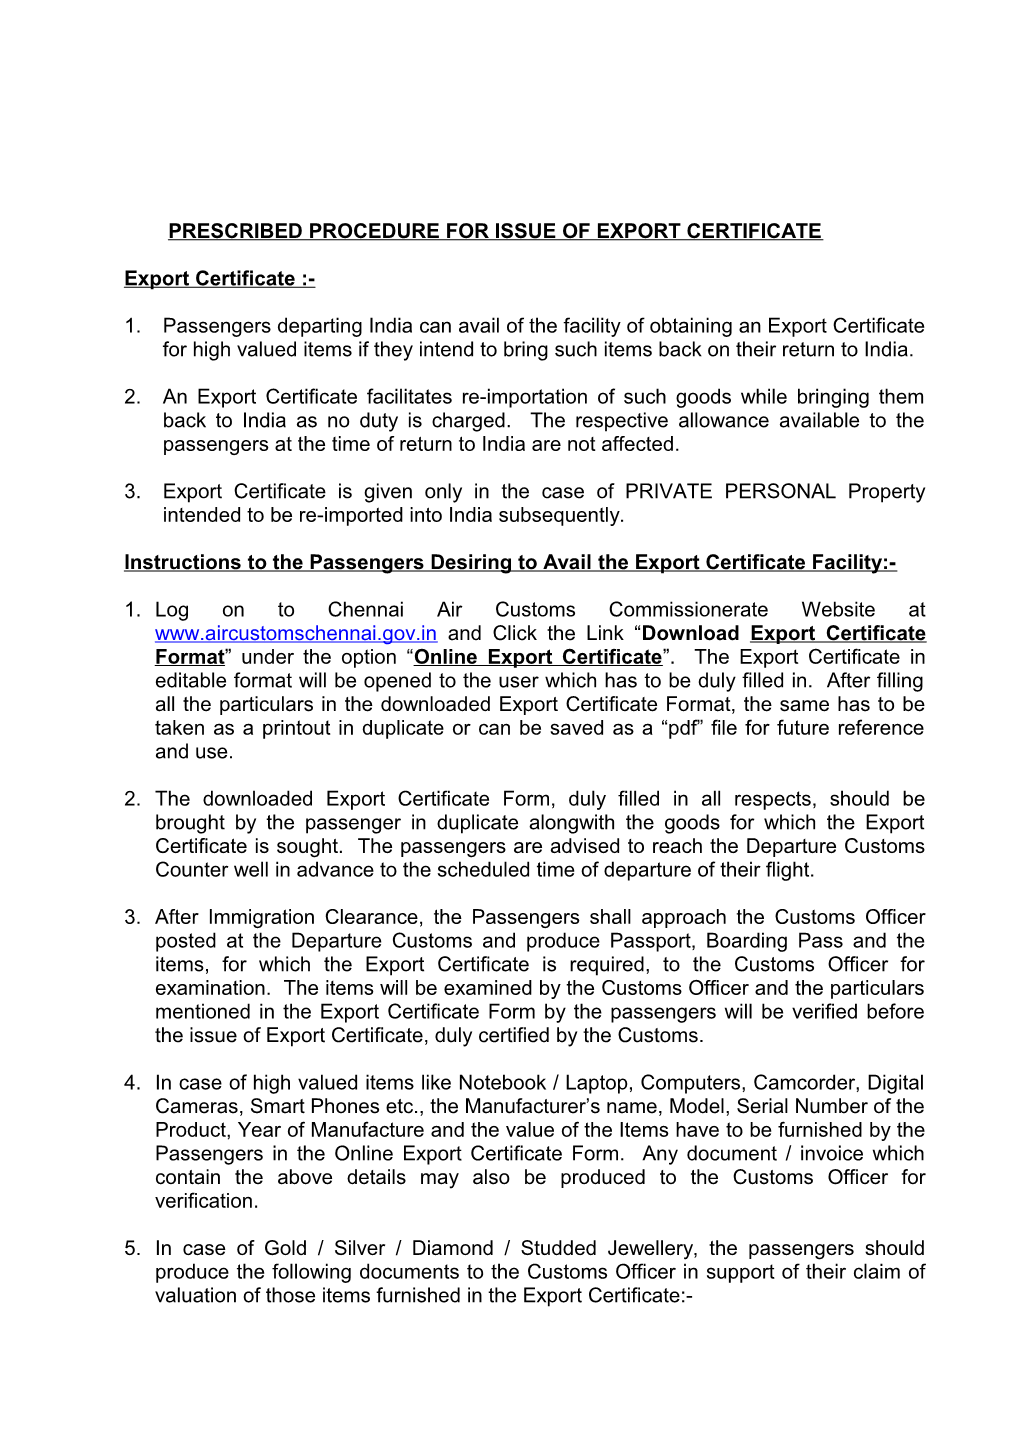 Prescribed Procedure for Issue of Export Certificate